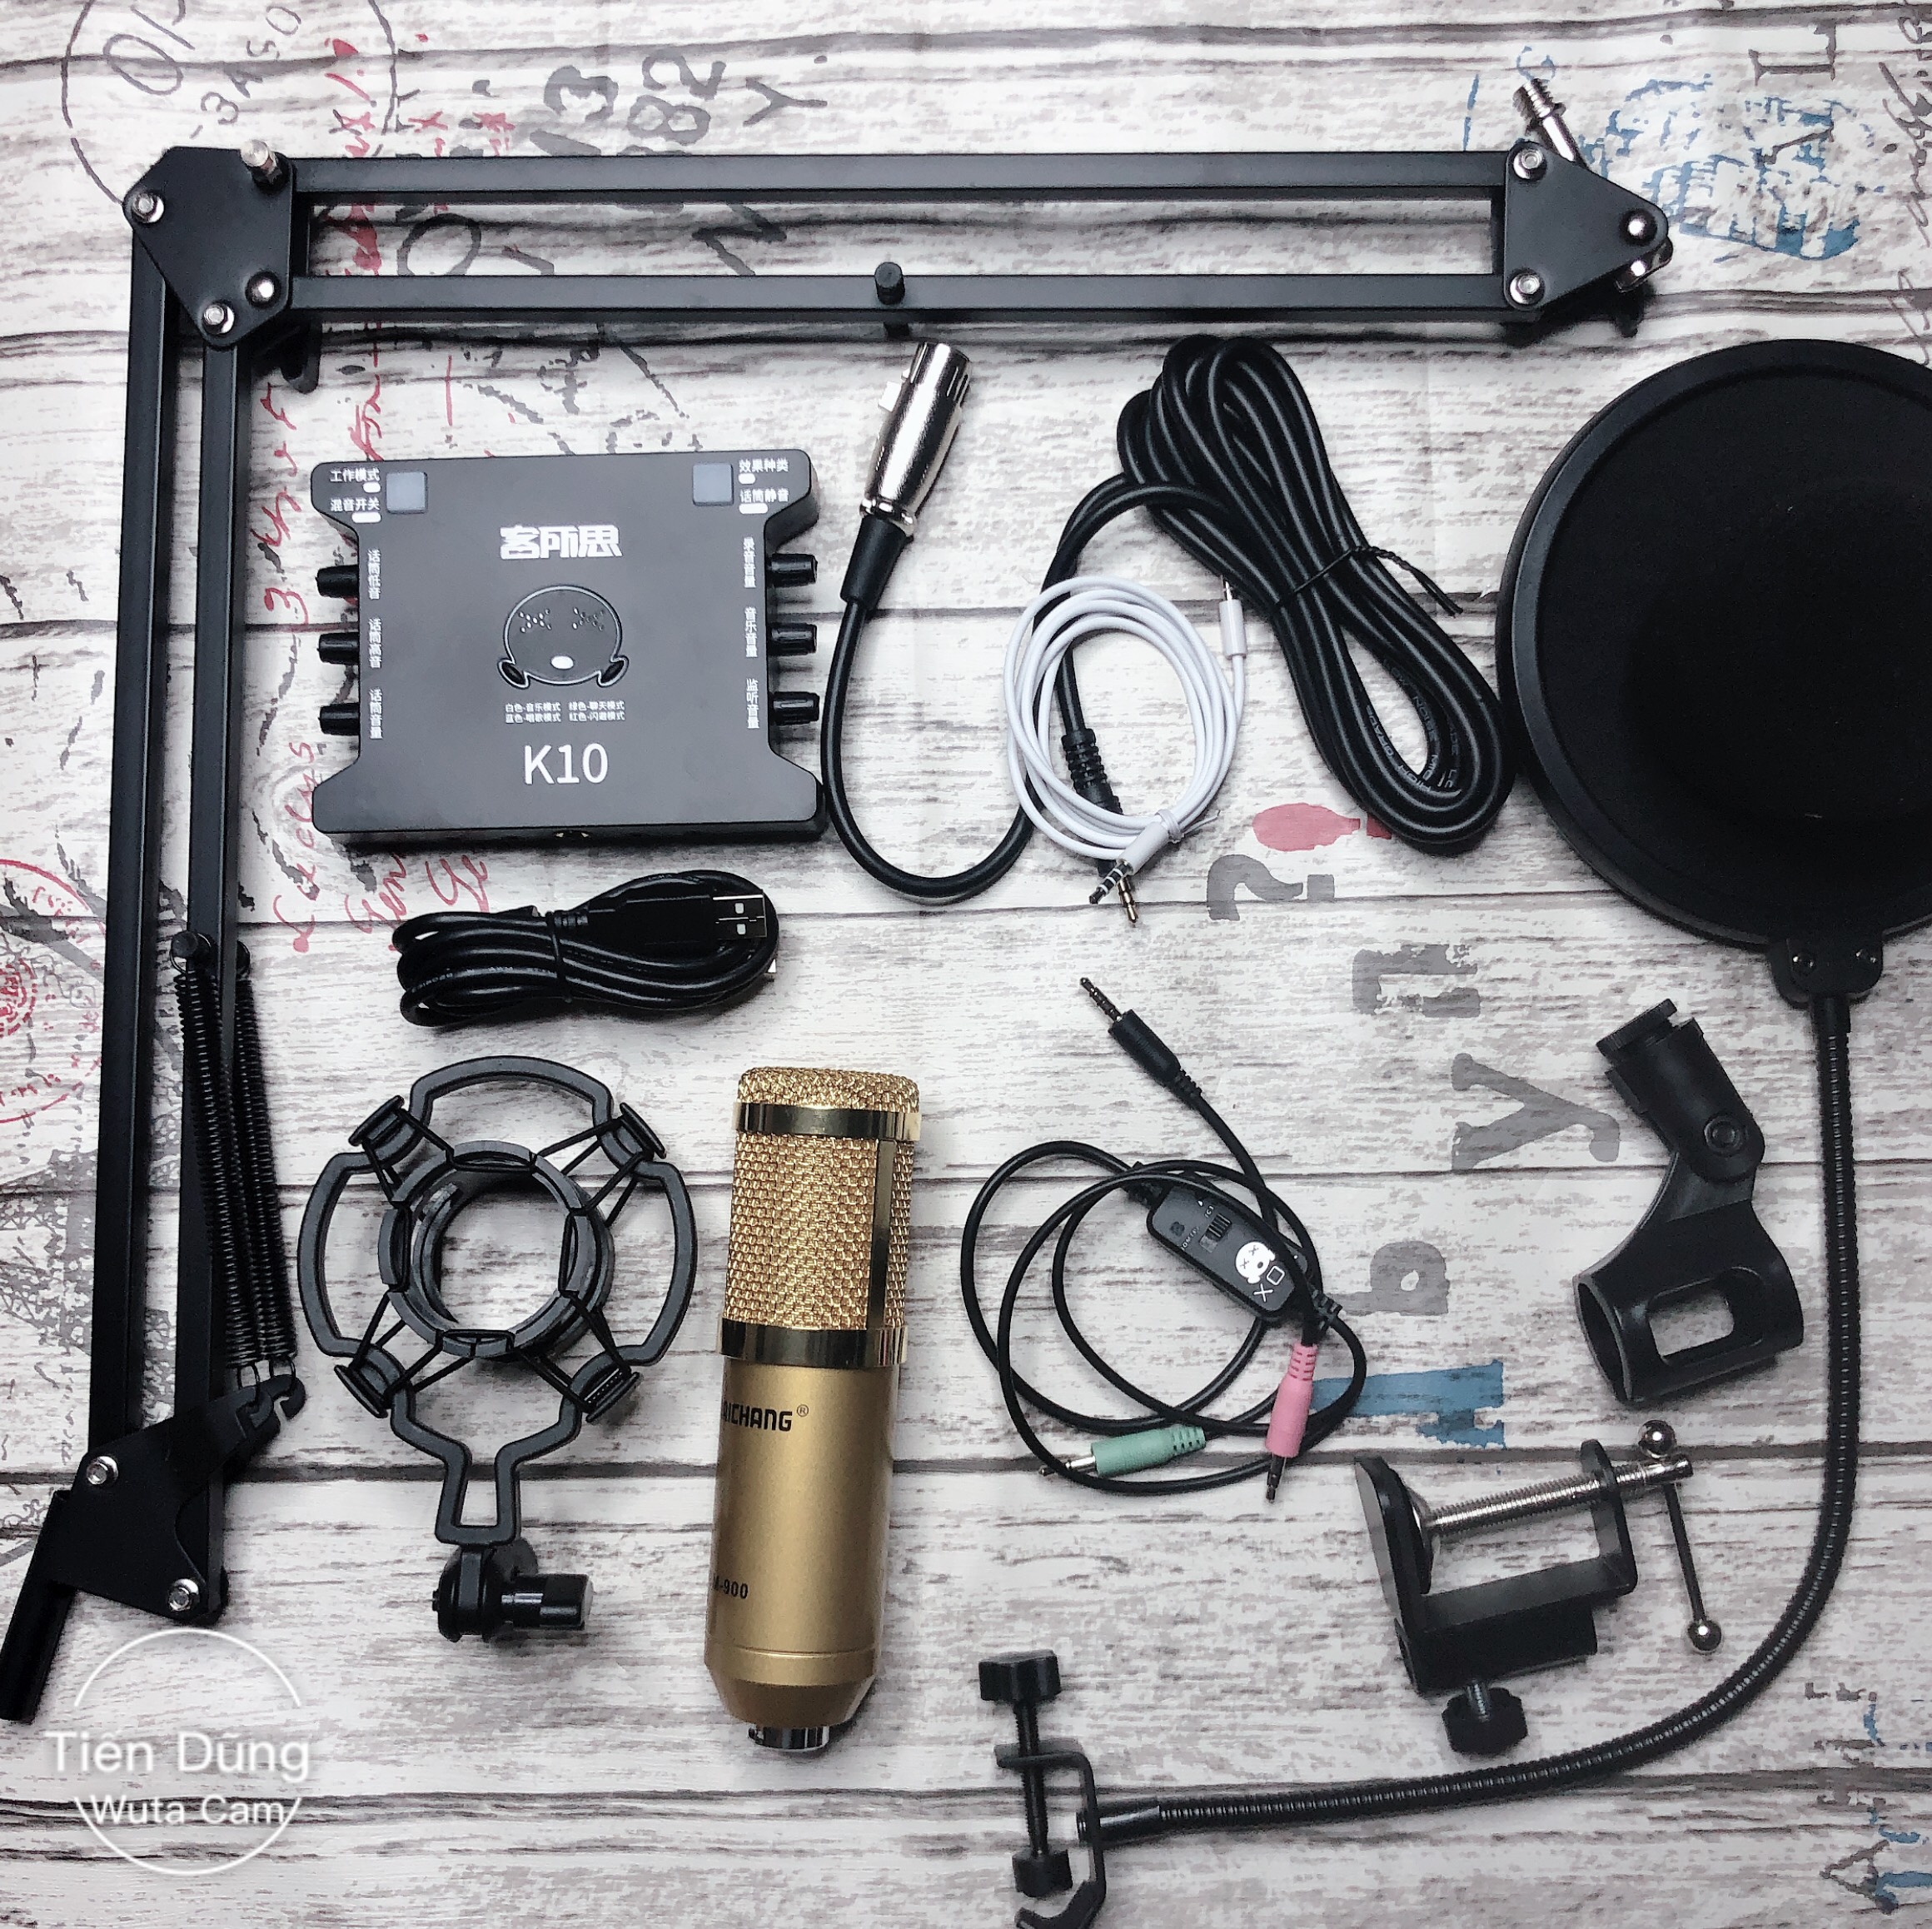 Combo bộ mic thu âm BM900 đi sound card xox k10 dây livestream MA2 chân kẹp màng lọc - Trọn bộ mic livetream thoại hát với các ứng dụng và phần mền